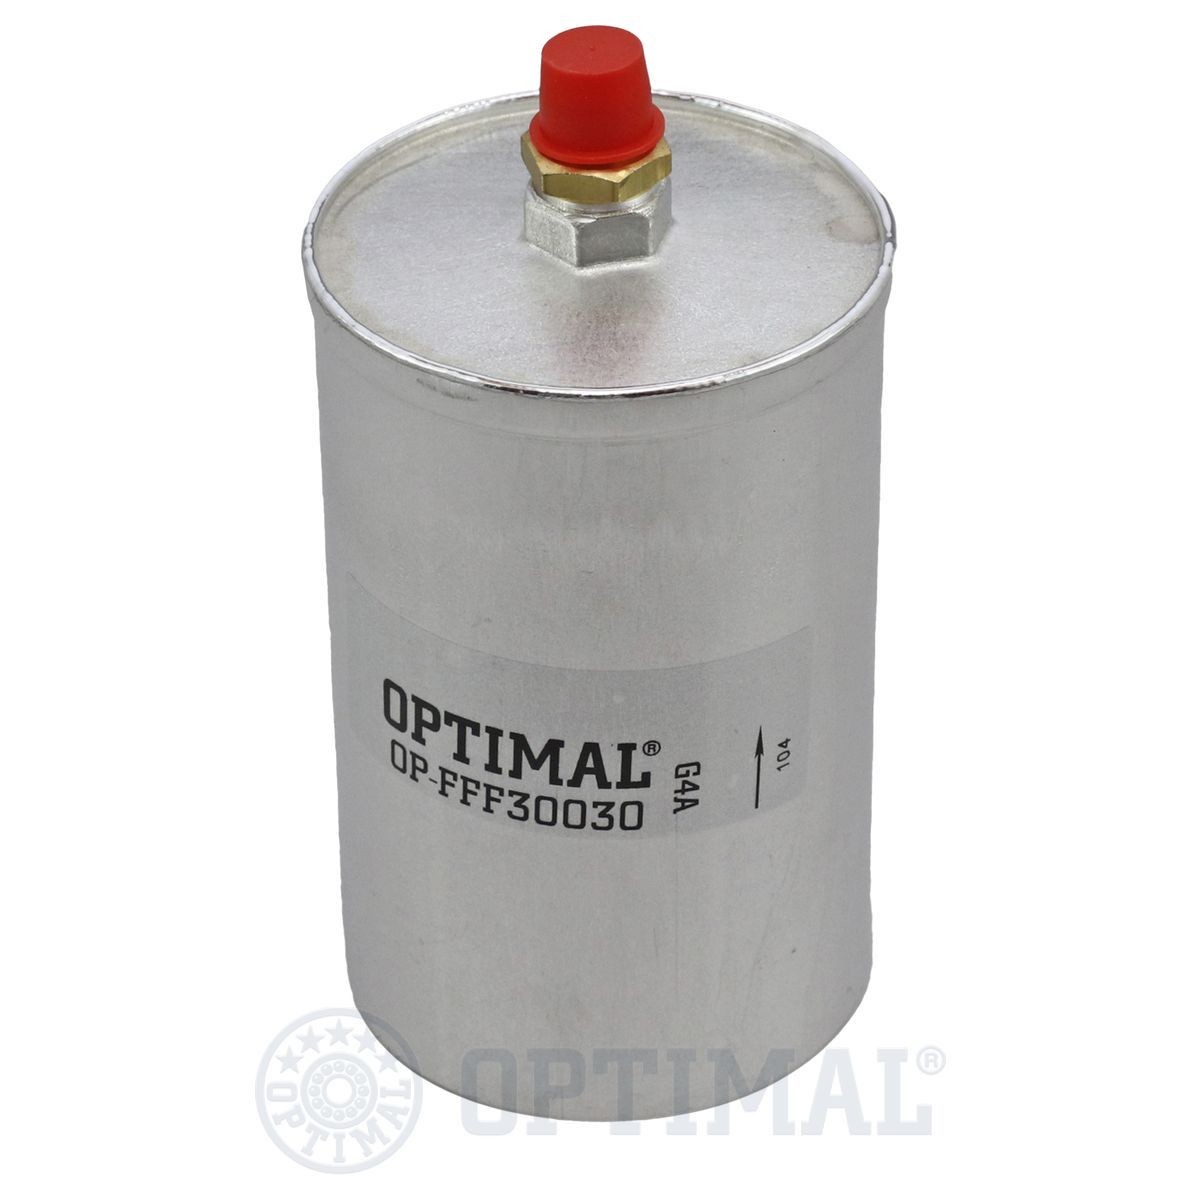 OPTIMAL OP-FFF30030 Fuel filter 002-477-17-01